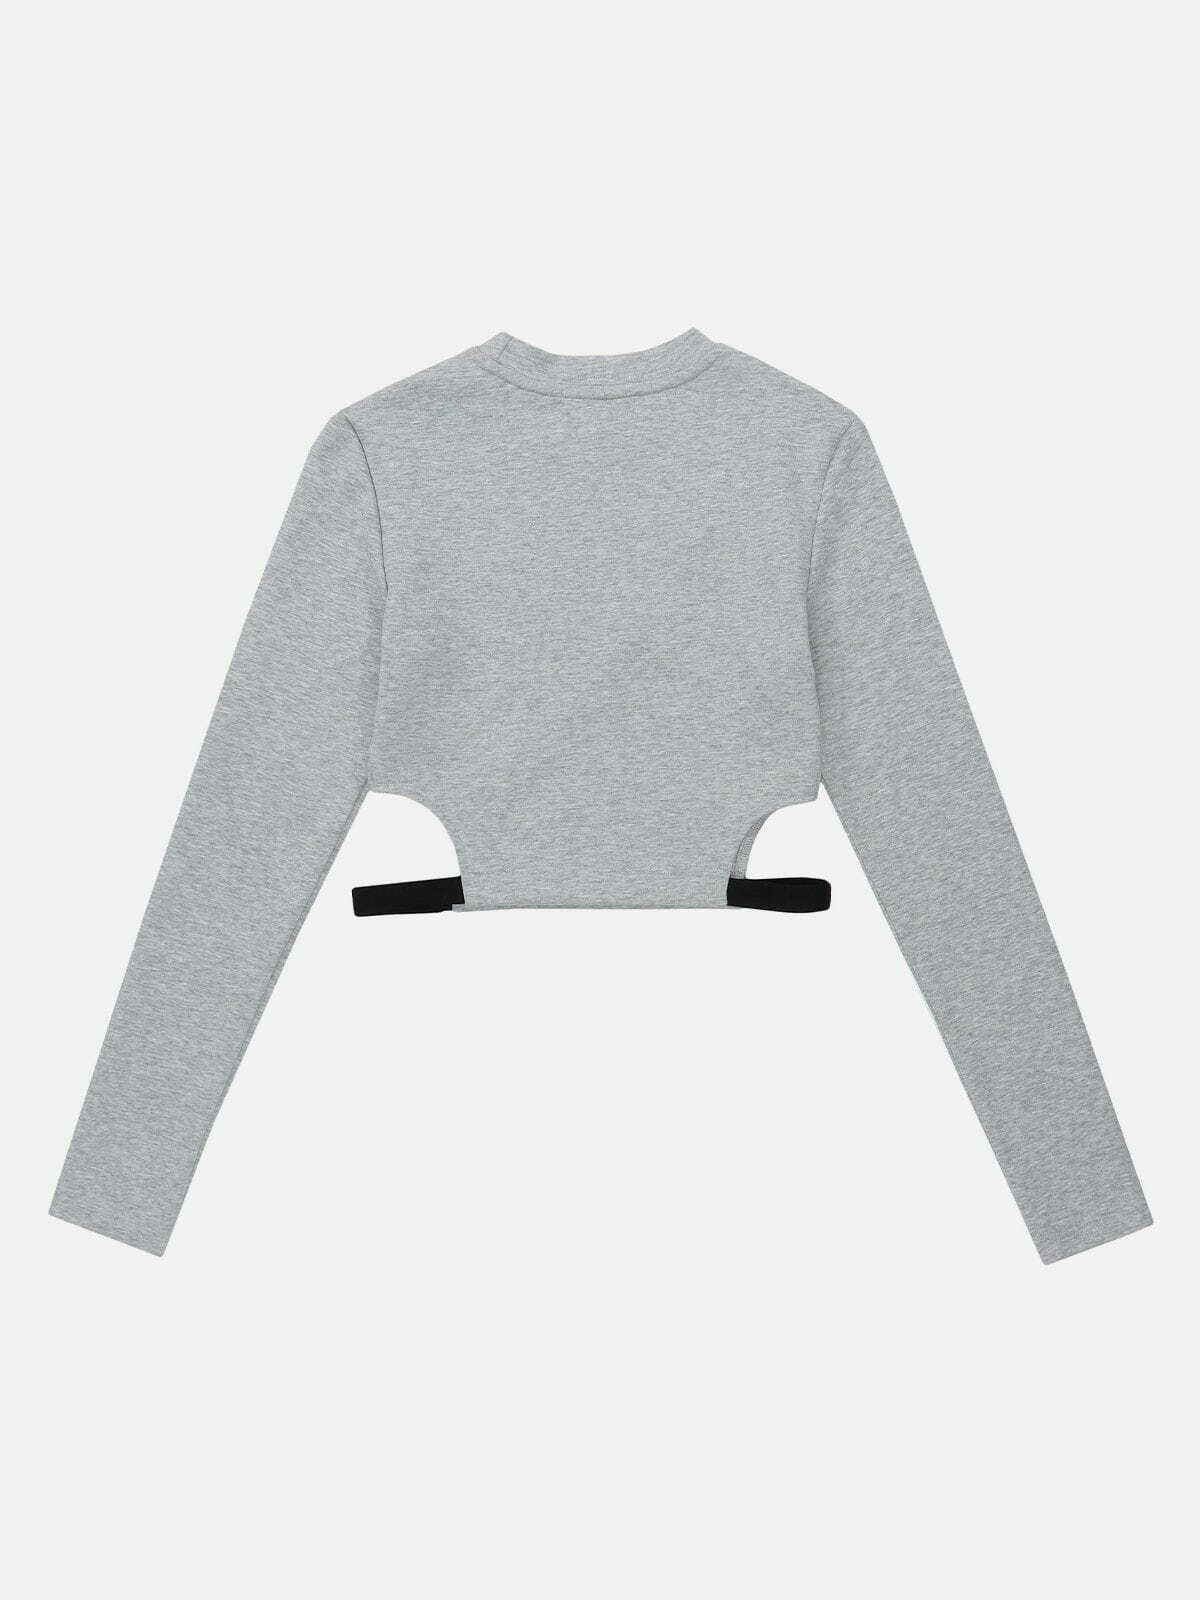 y2k webbing sweatshirt edgy & retro streetwear icon 6366